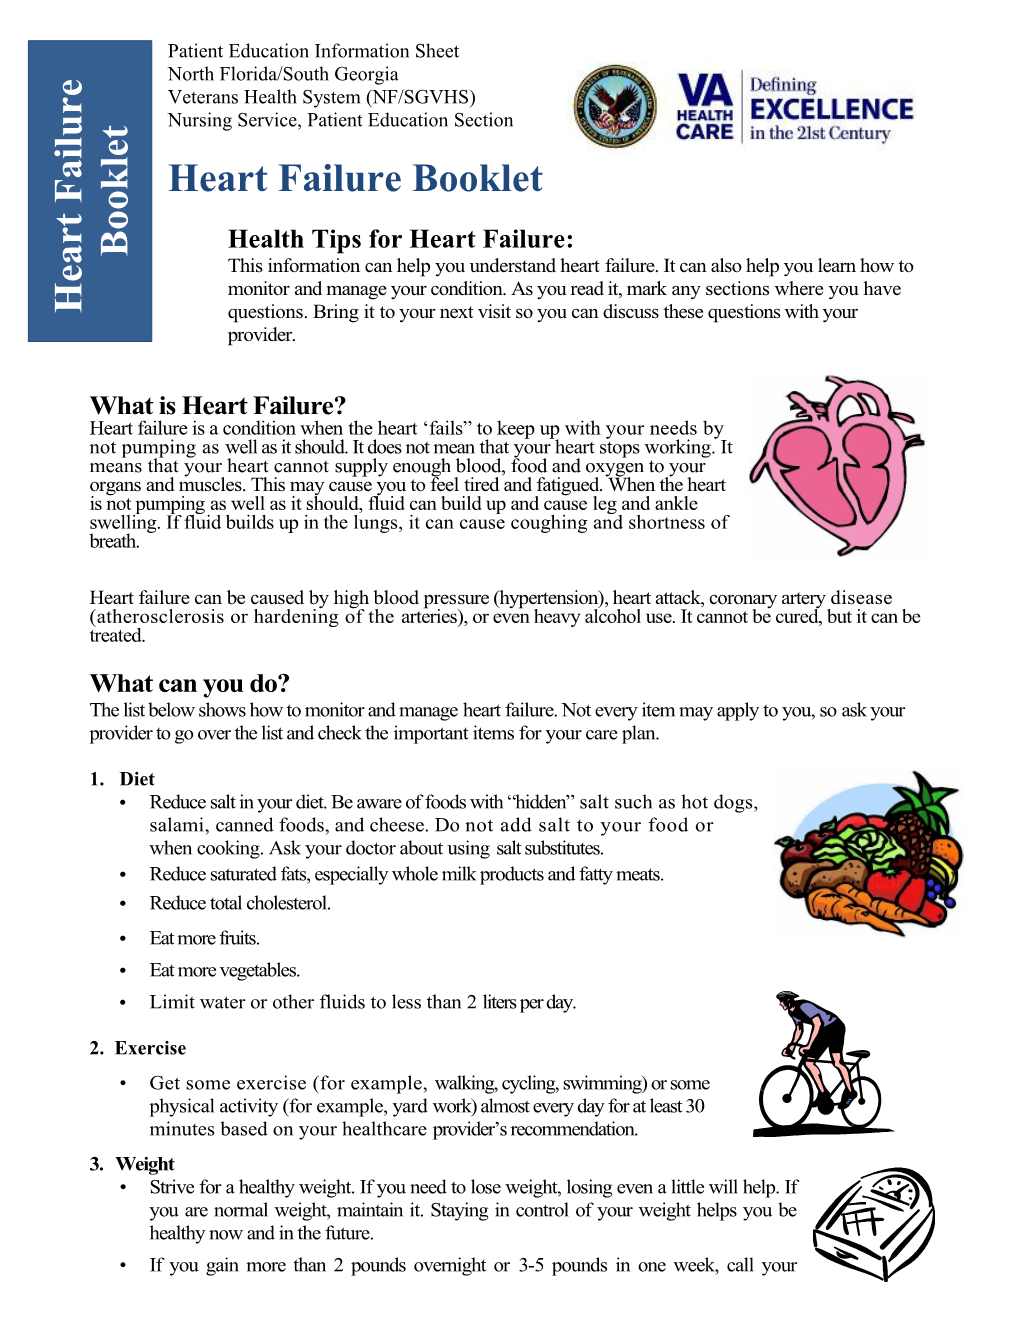 Heart Failure Booklet